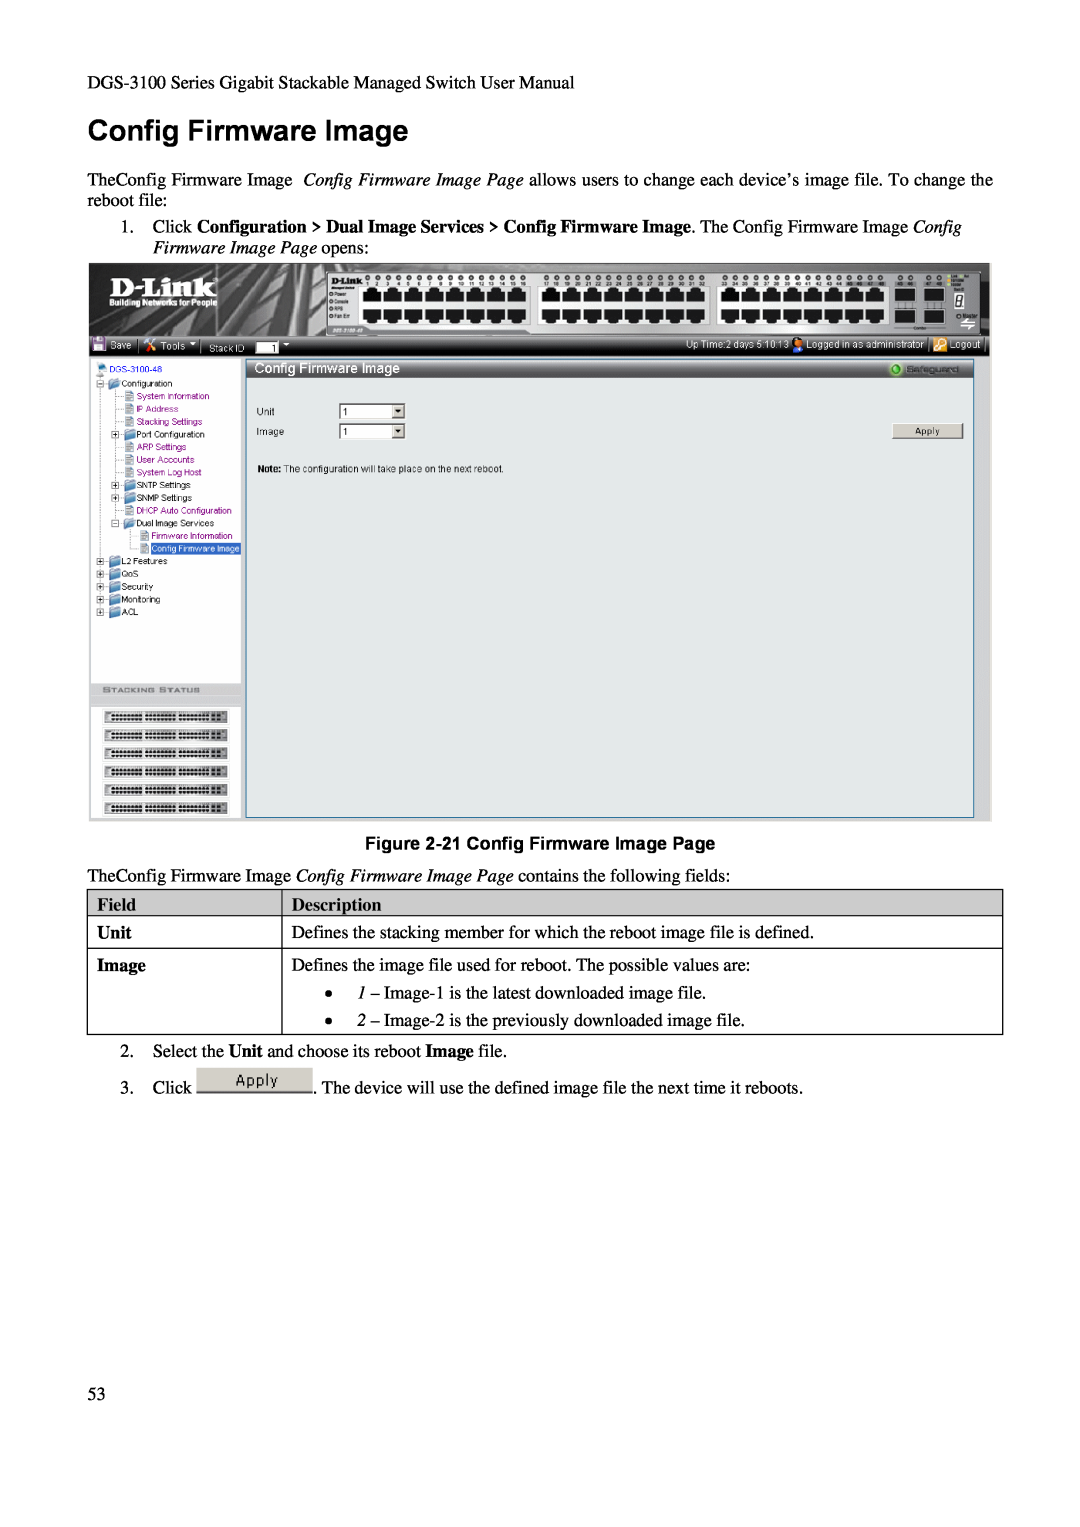 D-Link DGS-3100 user manual 21 Config Firmware Image Page, Field, Description, Unit 